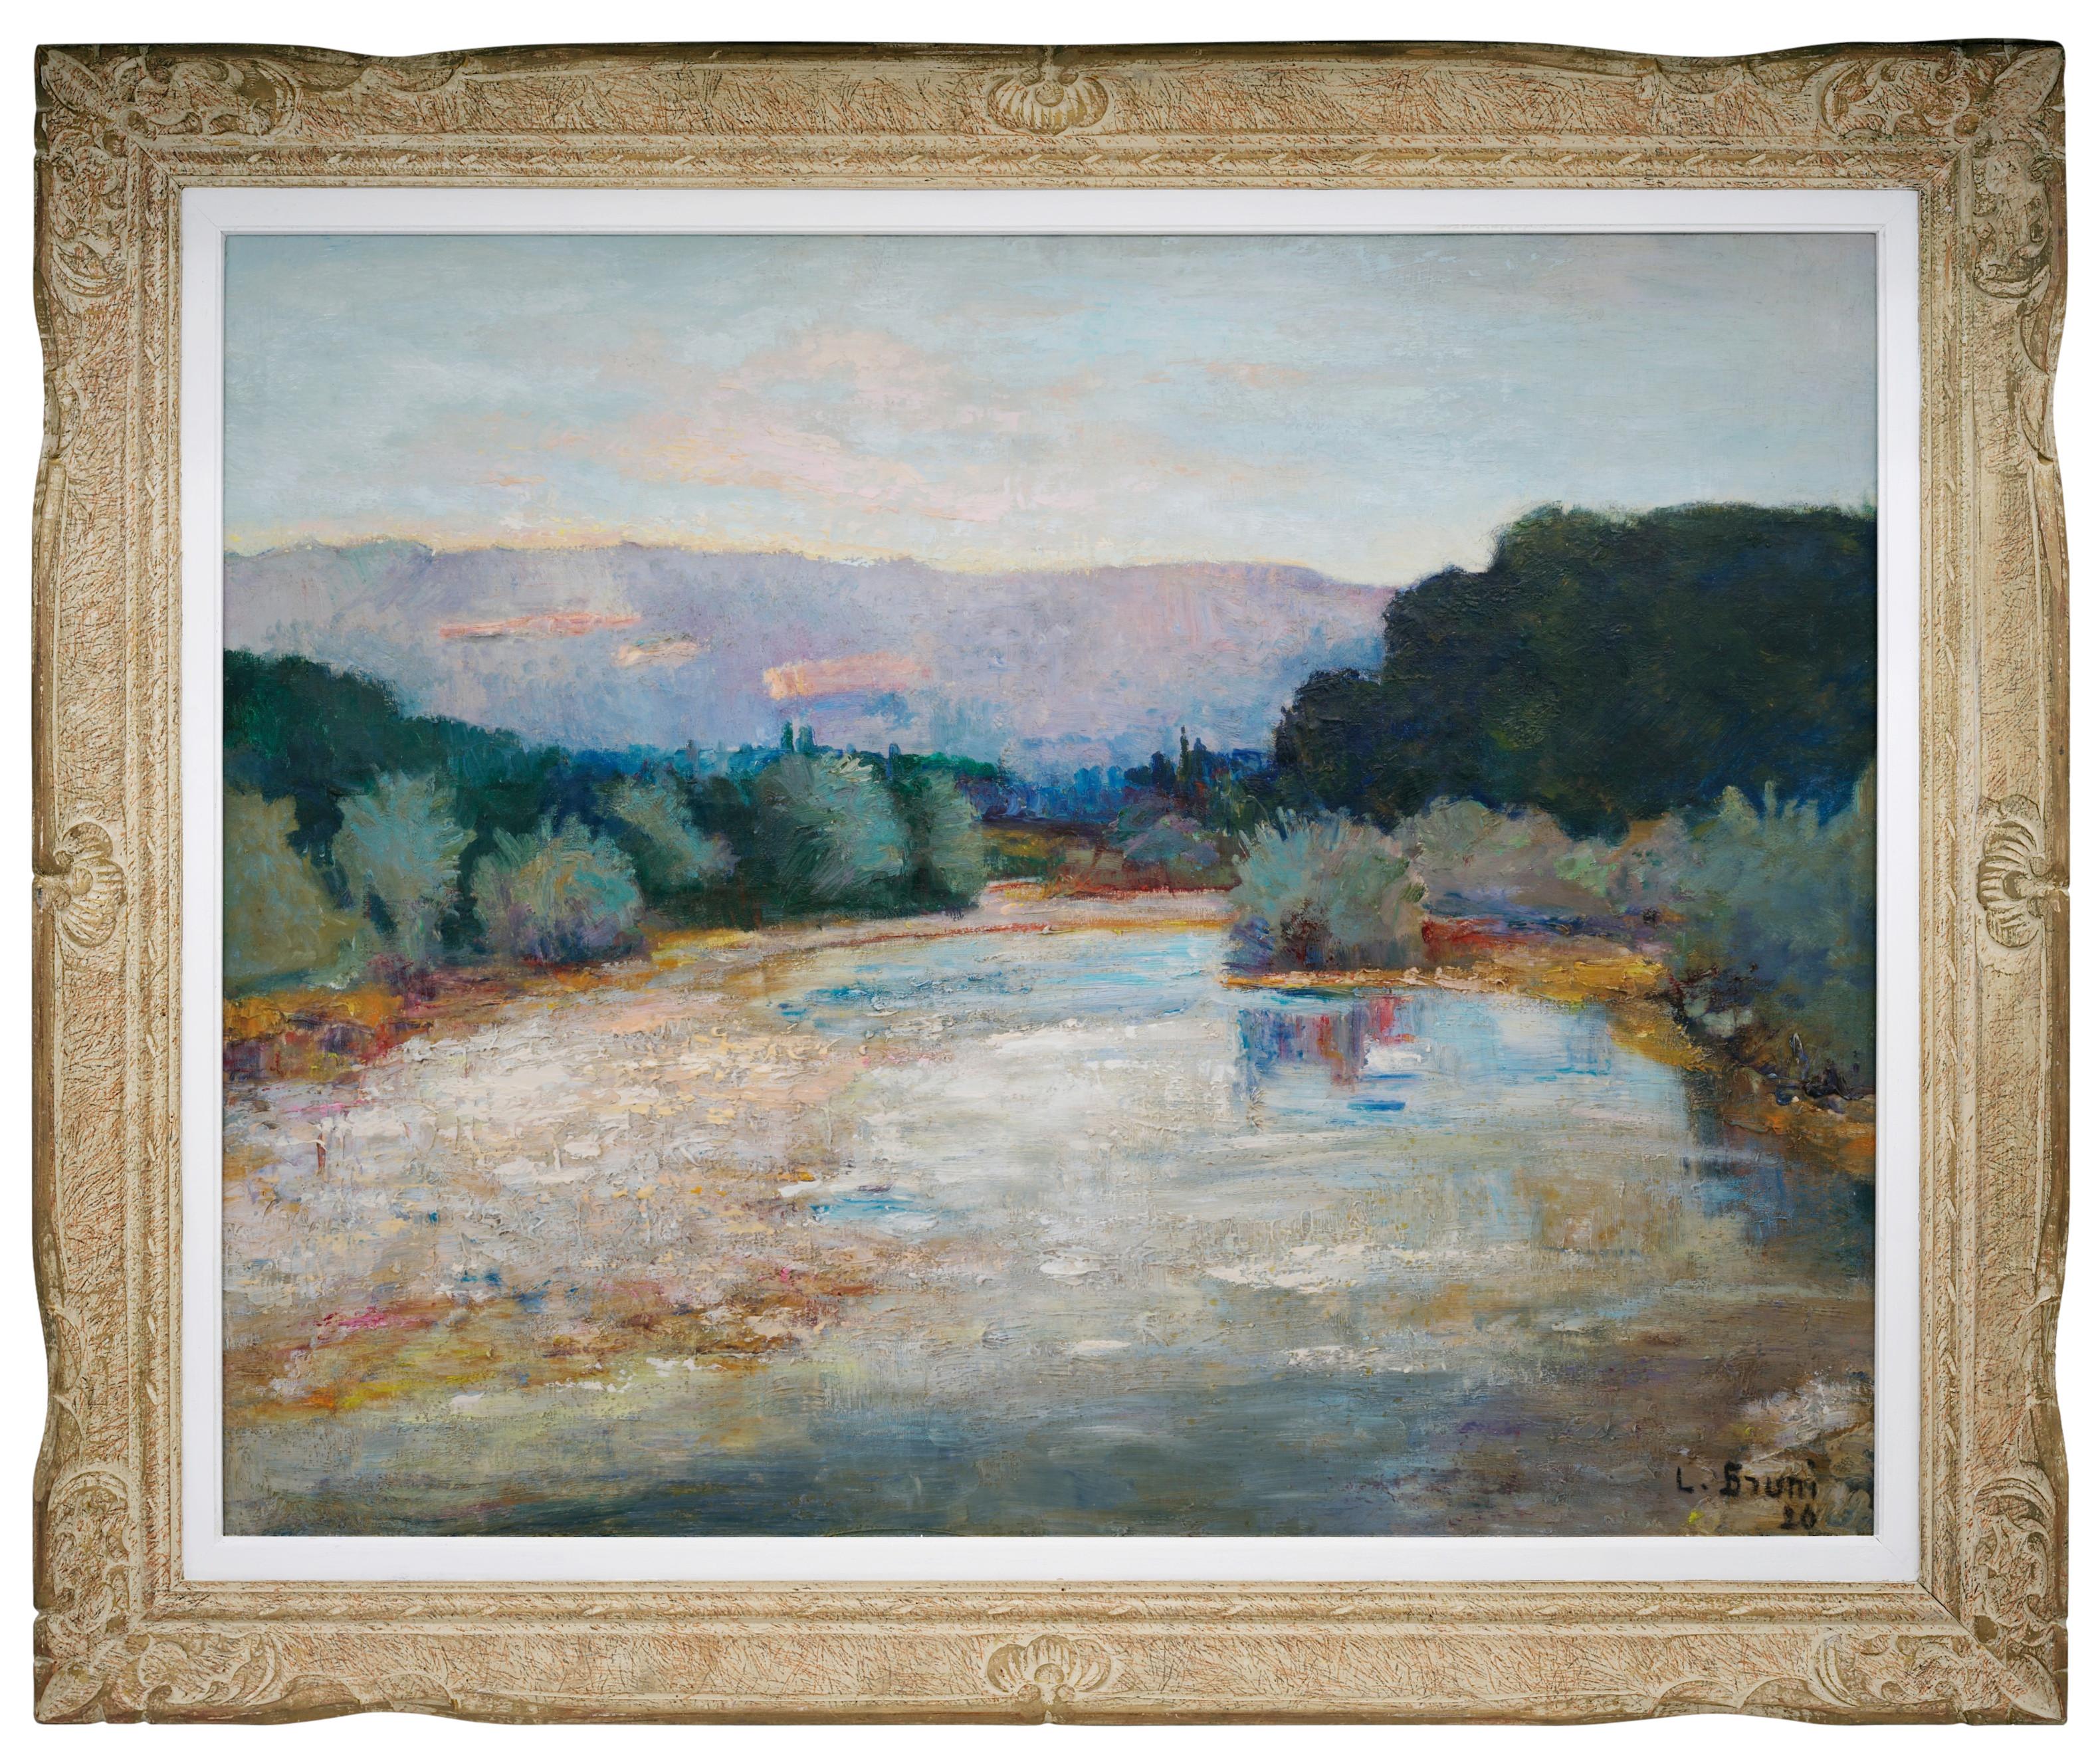 Laure Stella Bruni Landscape Painting – Laure Bruni, Öl auf Leinwand, "Landschaft der Drôme", 1926